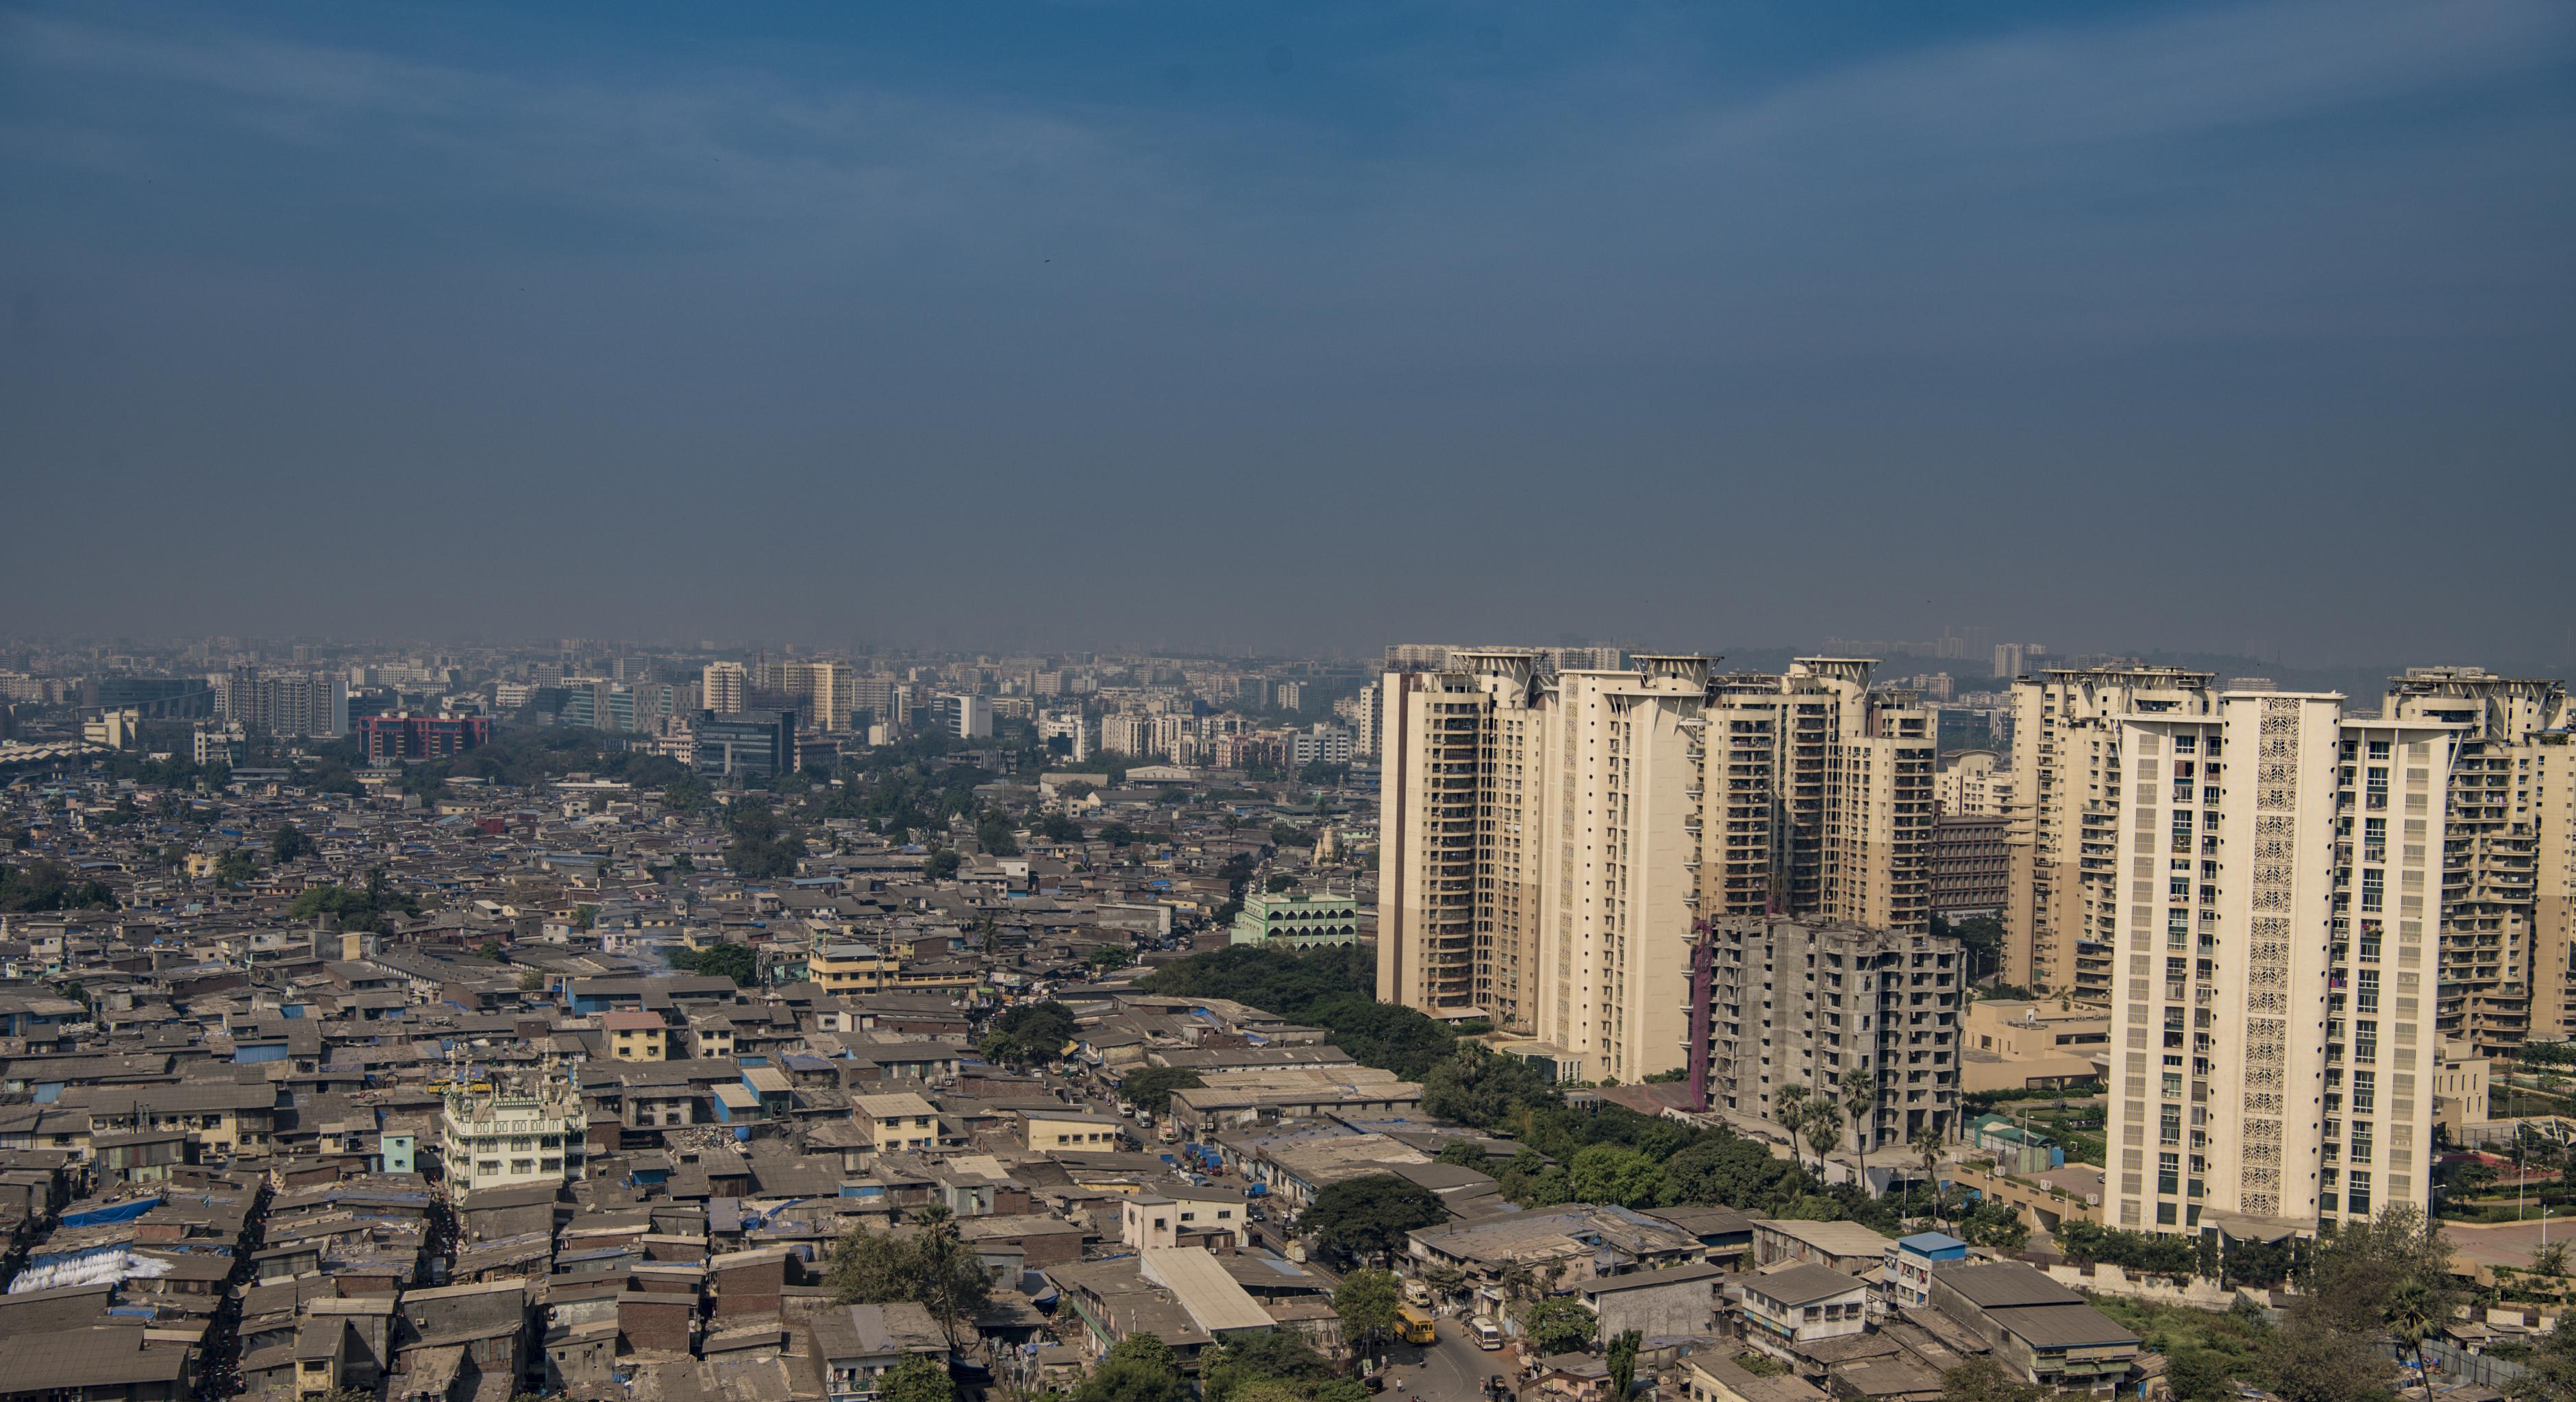 Slum neben Hochhäusern in Mumbai, Indien